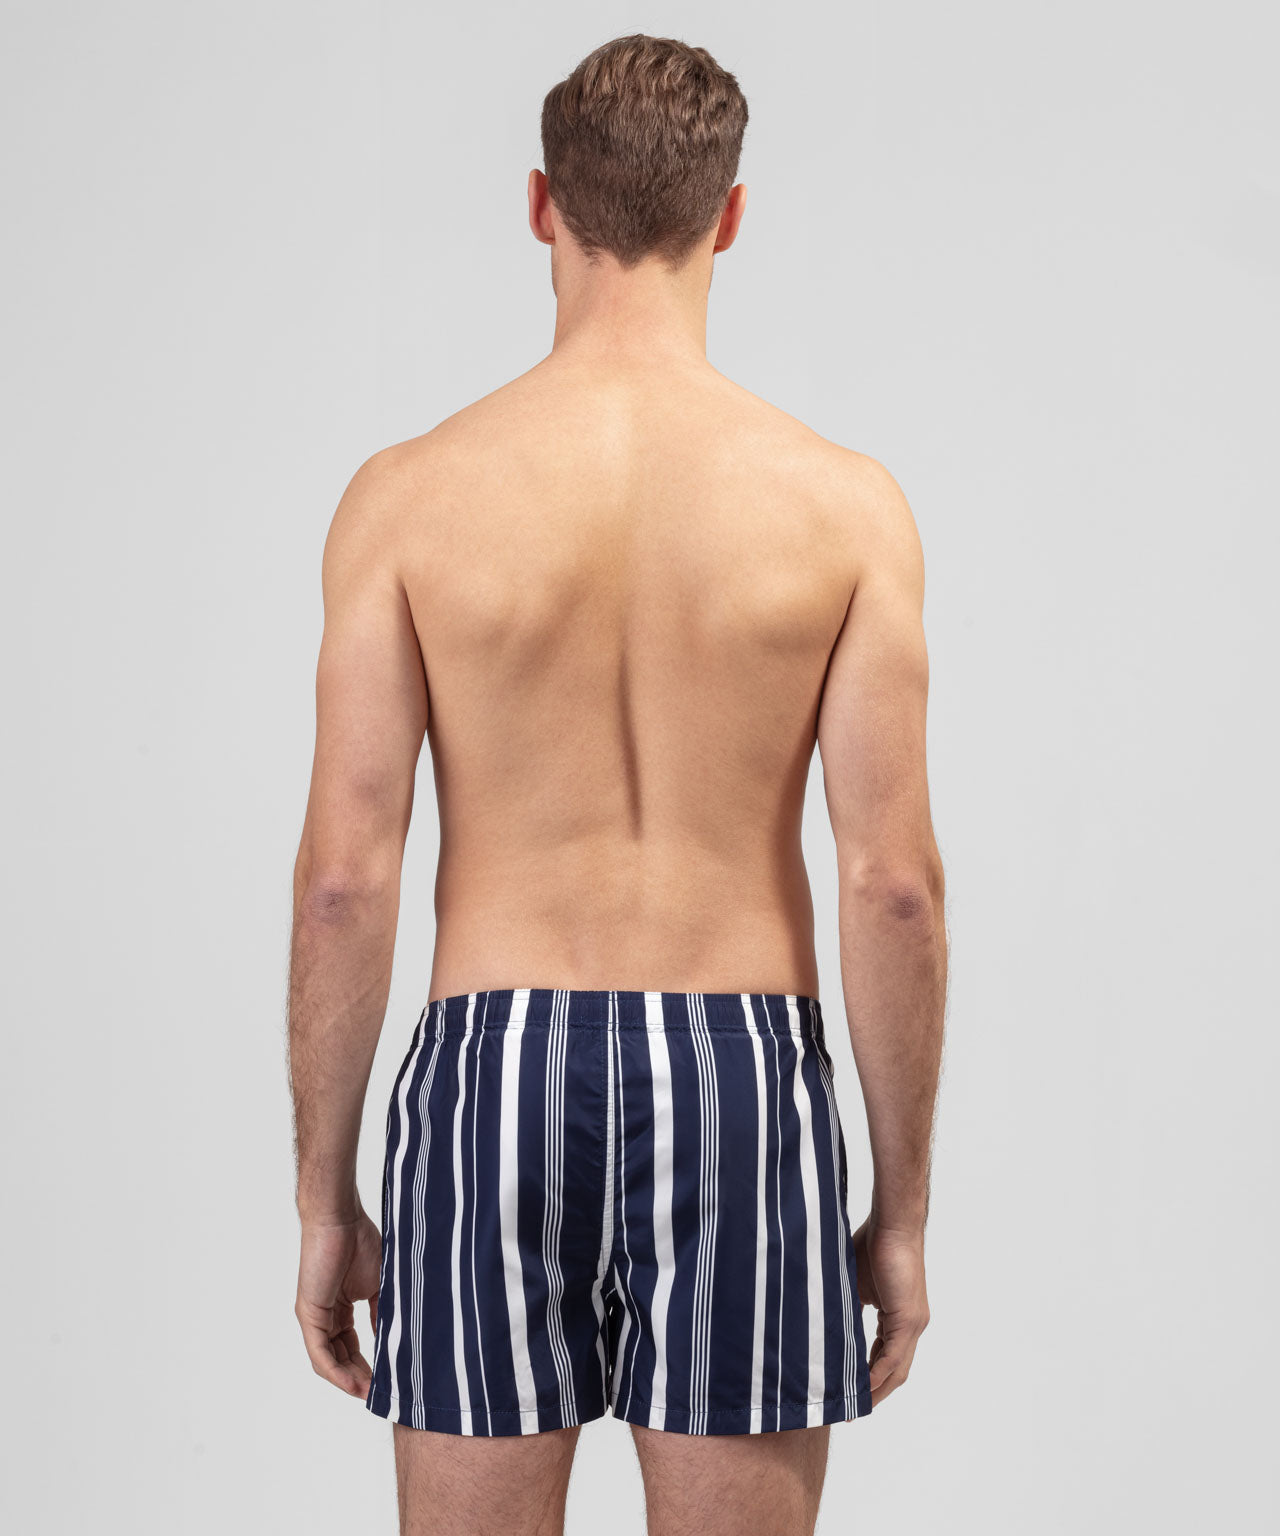 Swim Shorts Irregular Stripes: Navy / White